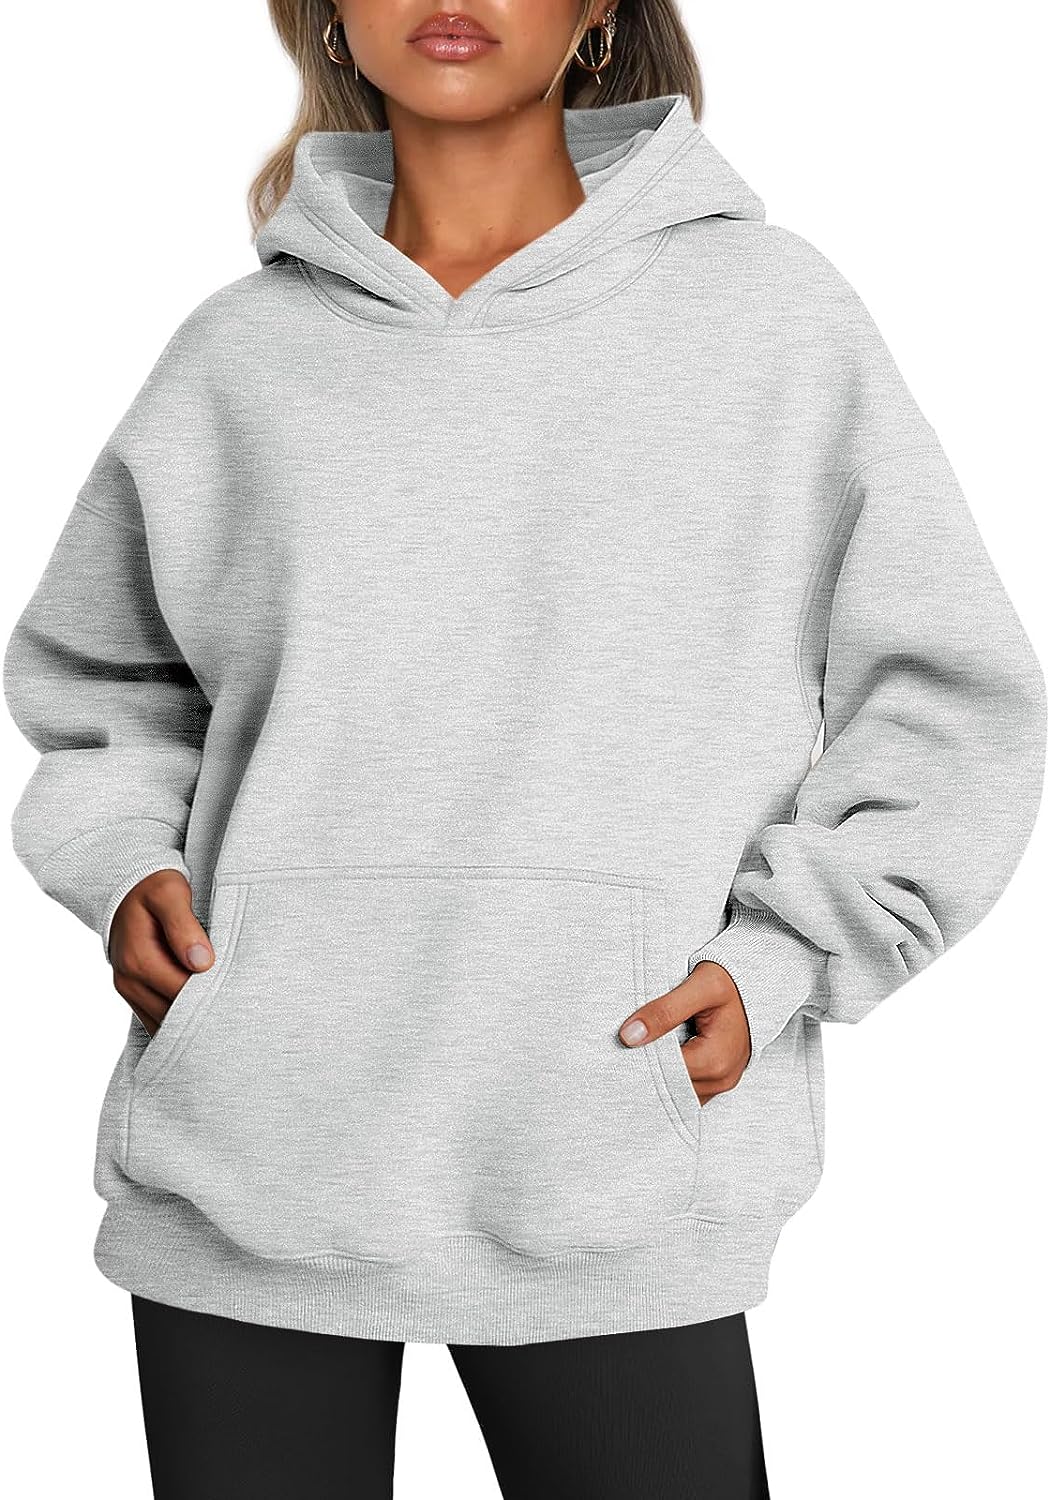 Wrenpies Oversized Vintage Hoodie Hooded Sweatshirt for Women